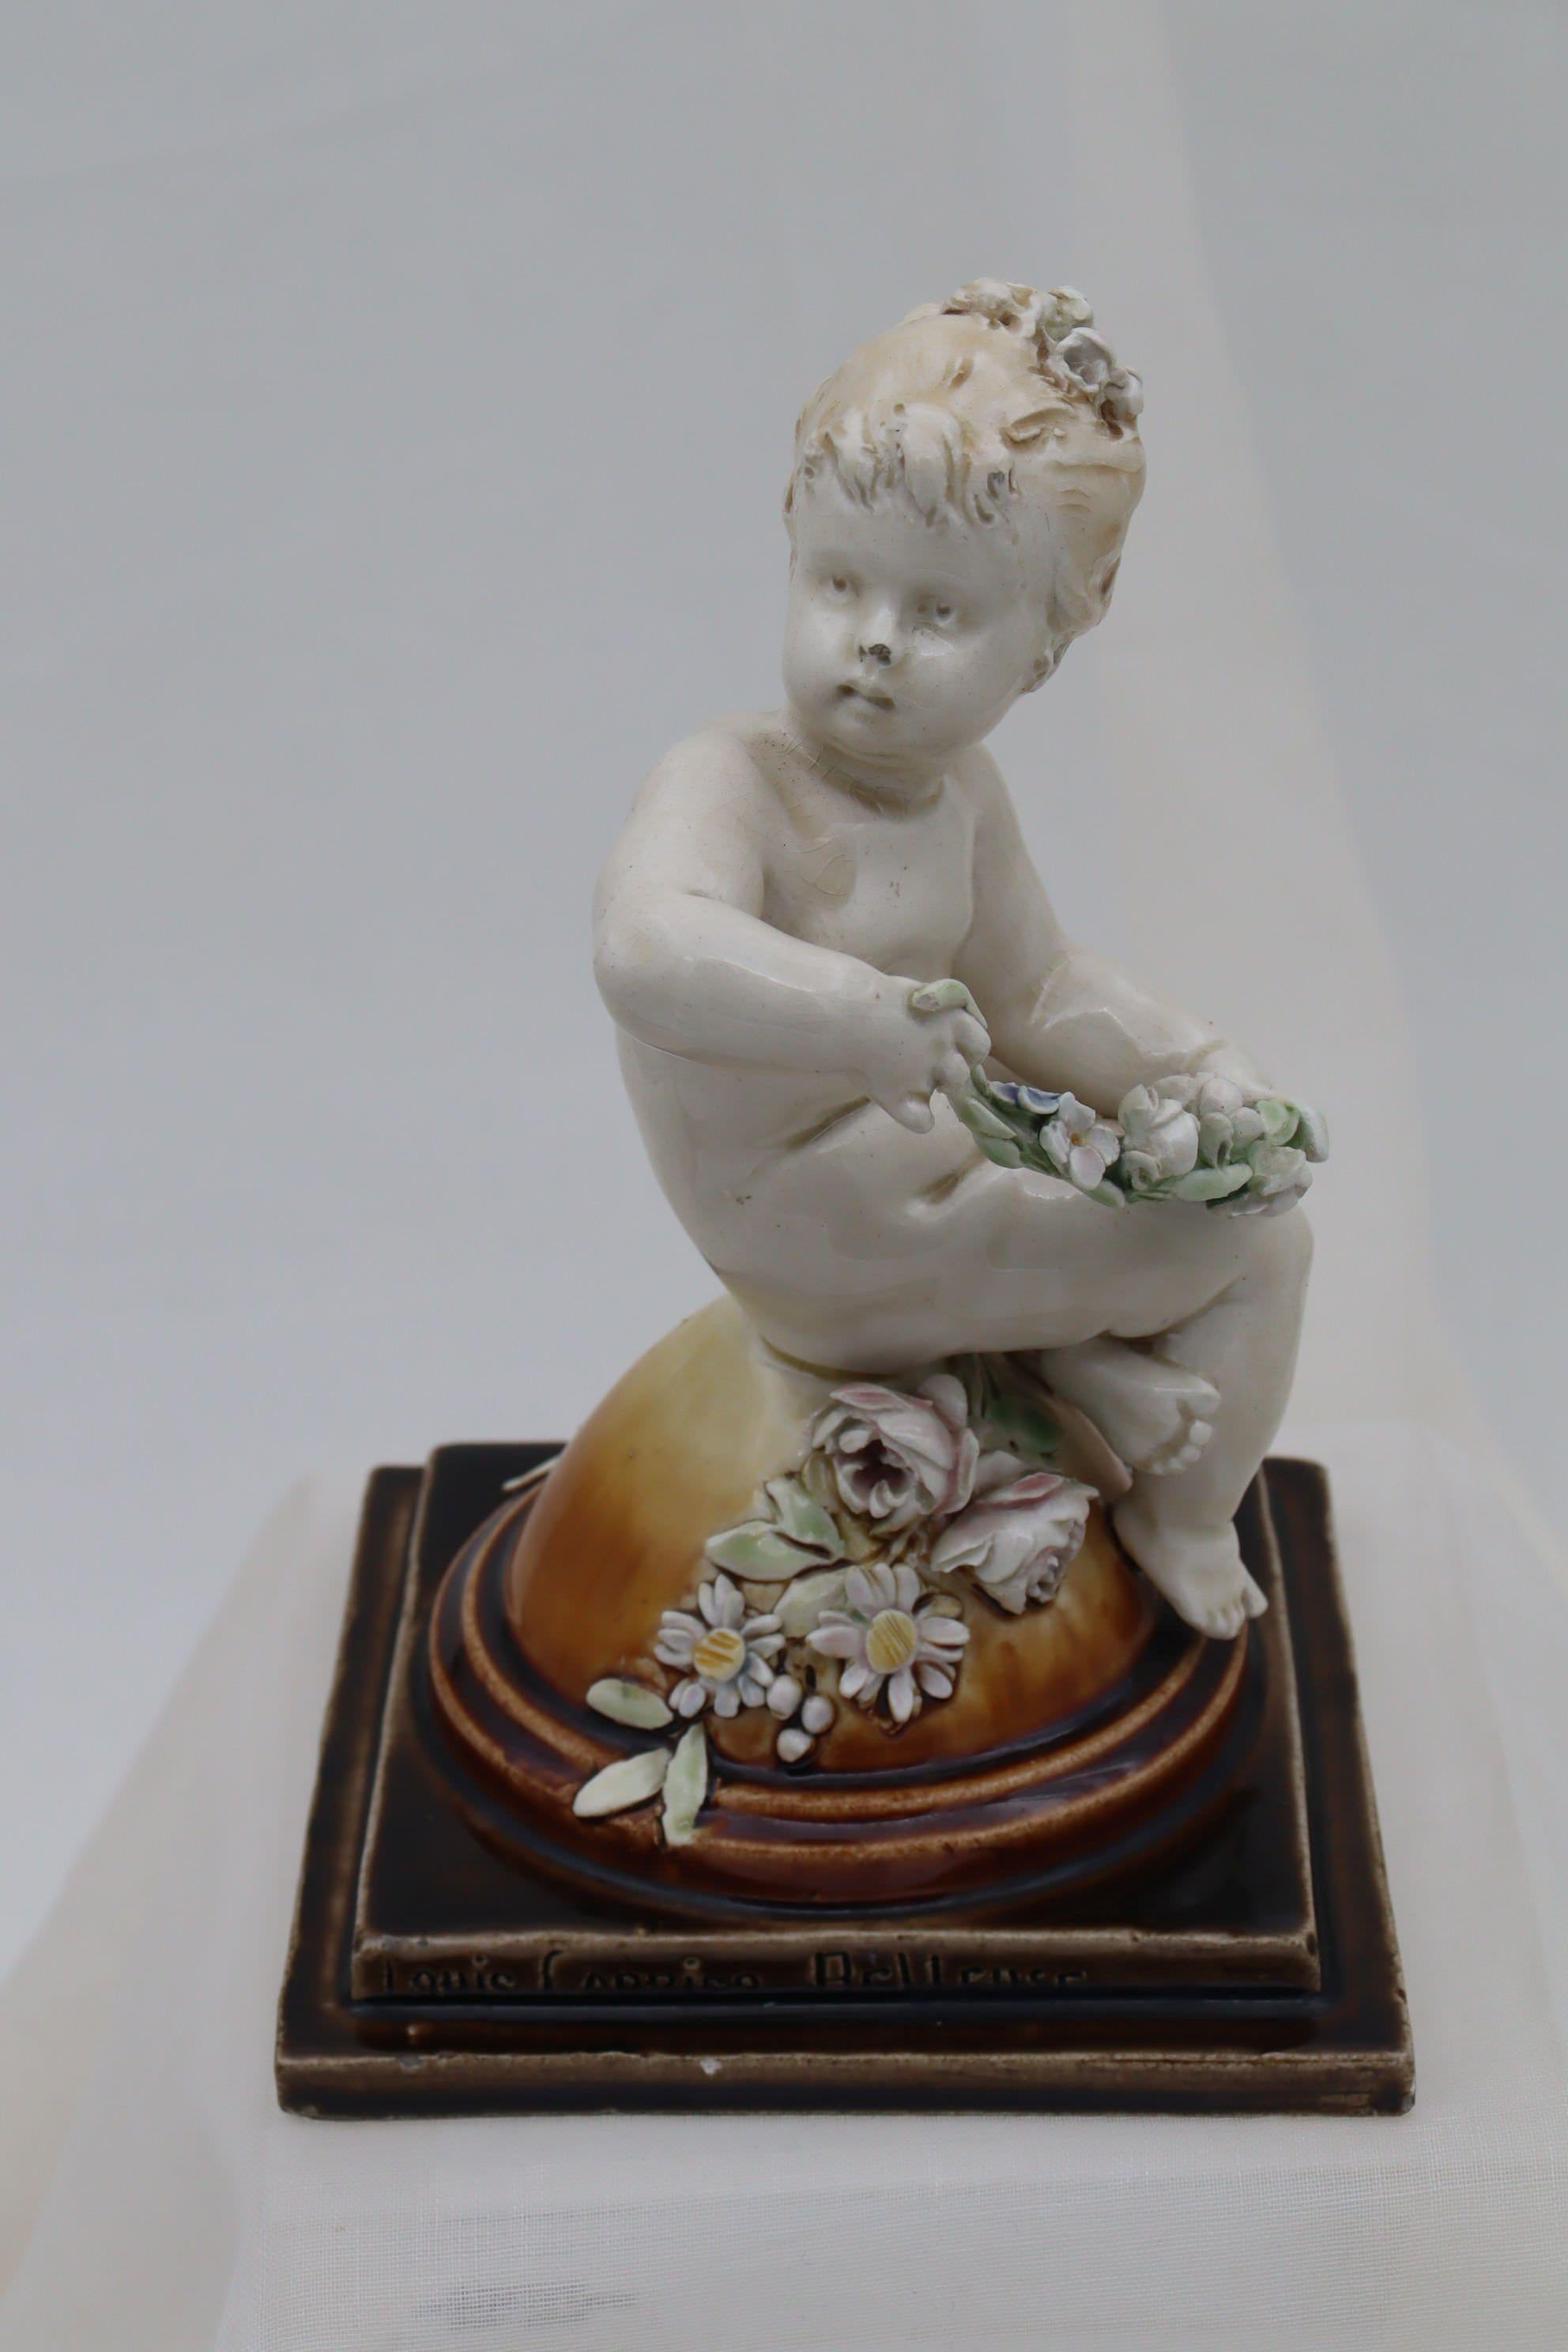 Cette figurine d'angelot a été modelée par Louis Carrier-Belleuse (1848-1913) pour la manufacture de Choisy du Roi. Le chérubin est assis sur un dôme, les jambes croisées, et tient une gerbe de fleurs tandis qu'une autre gerbe de fleurs repose sur